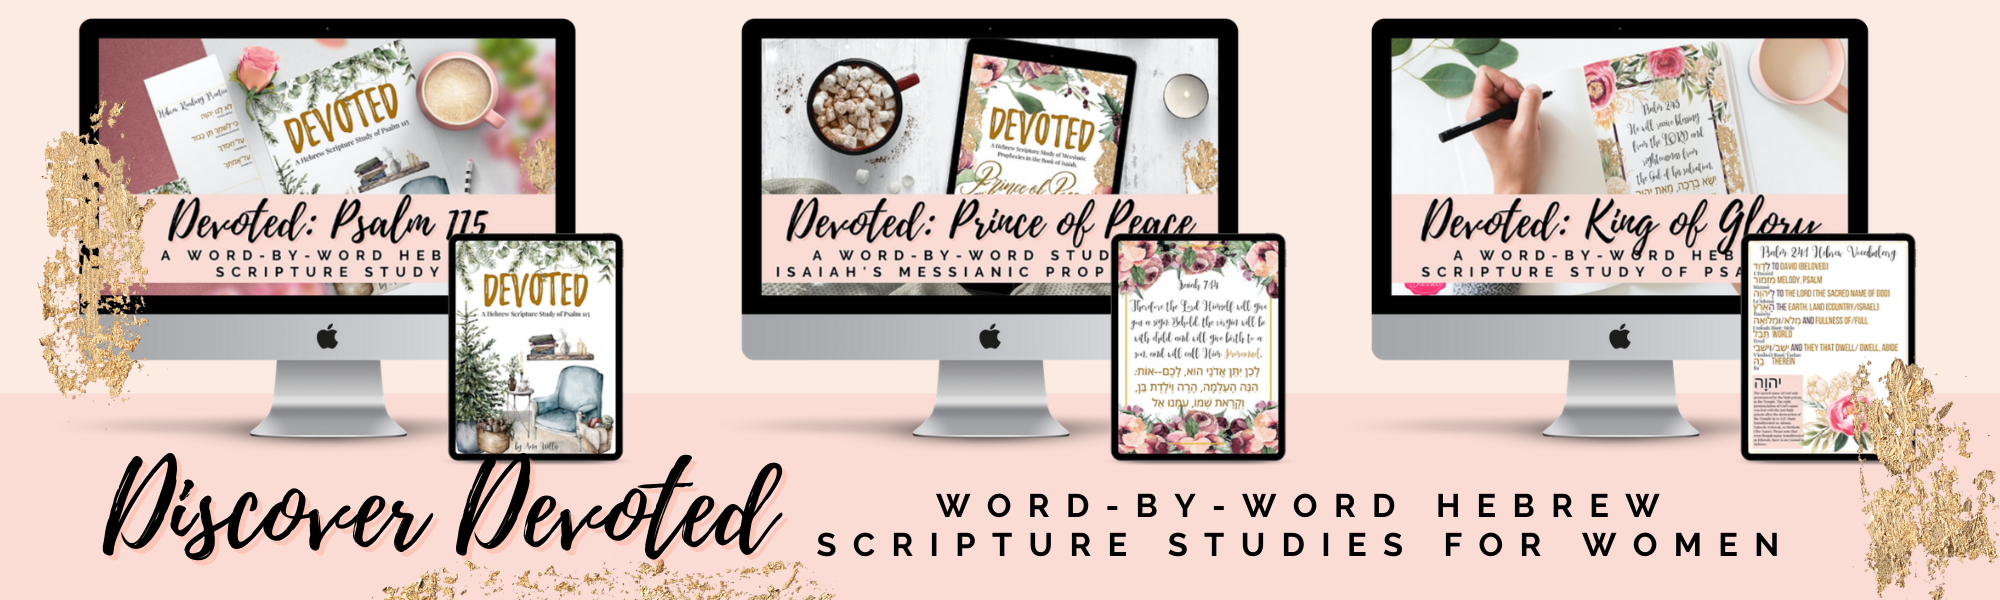 Devoted Hebrew Scripture Studies for Women